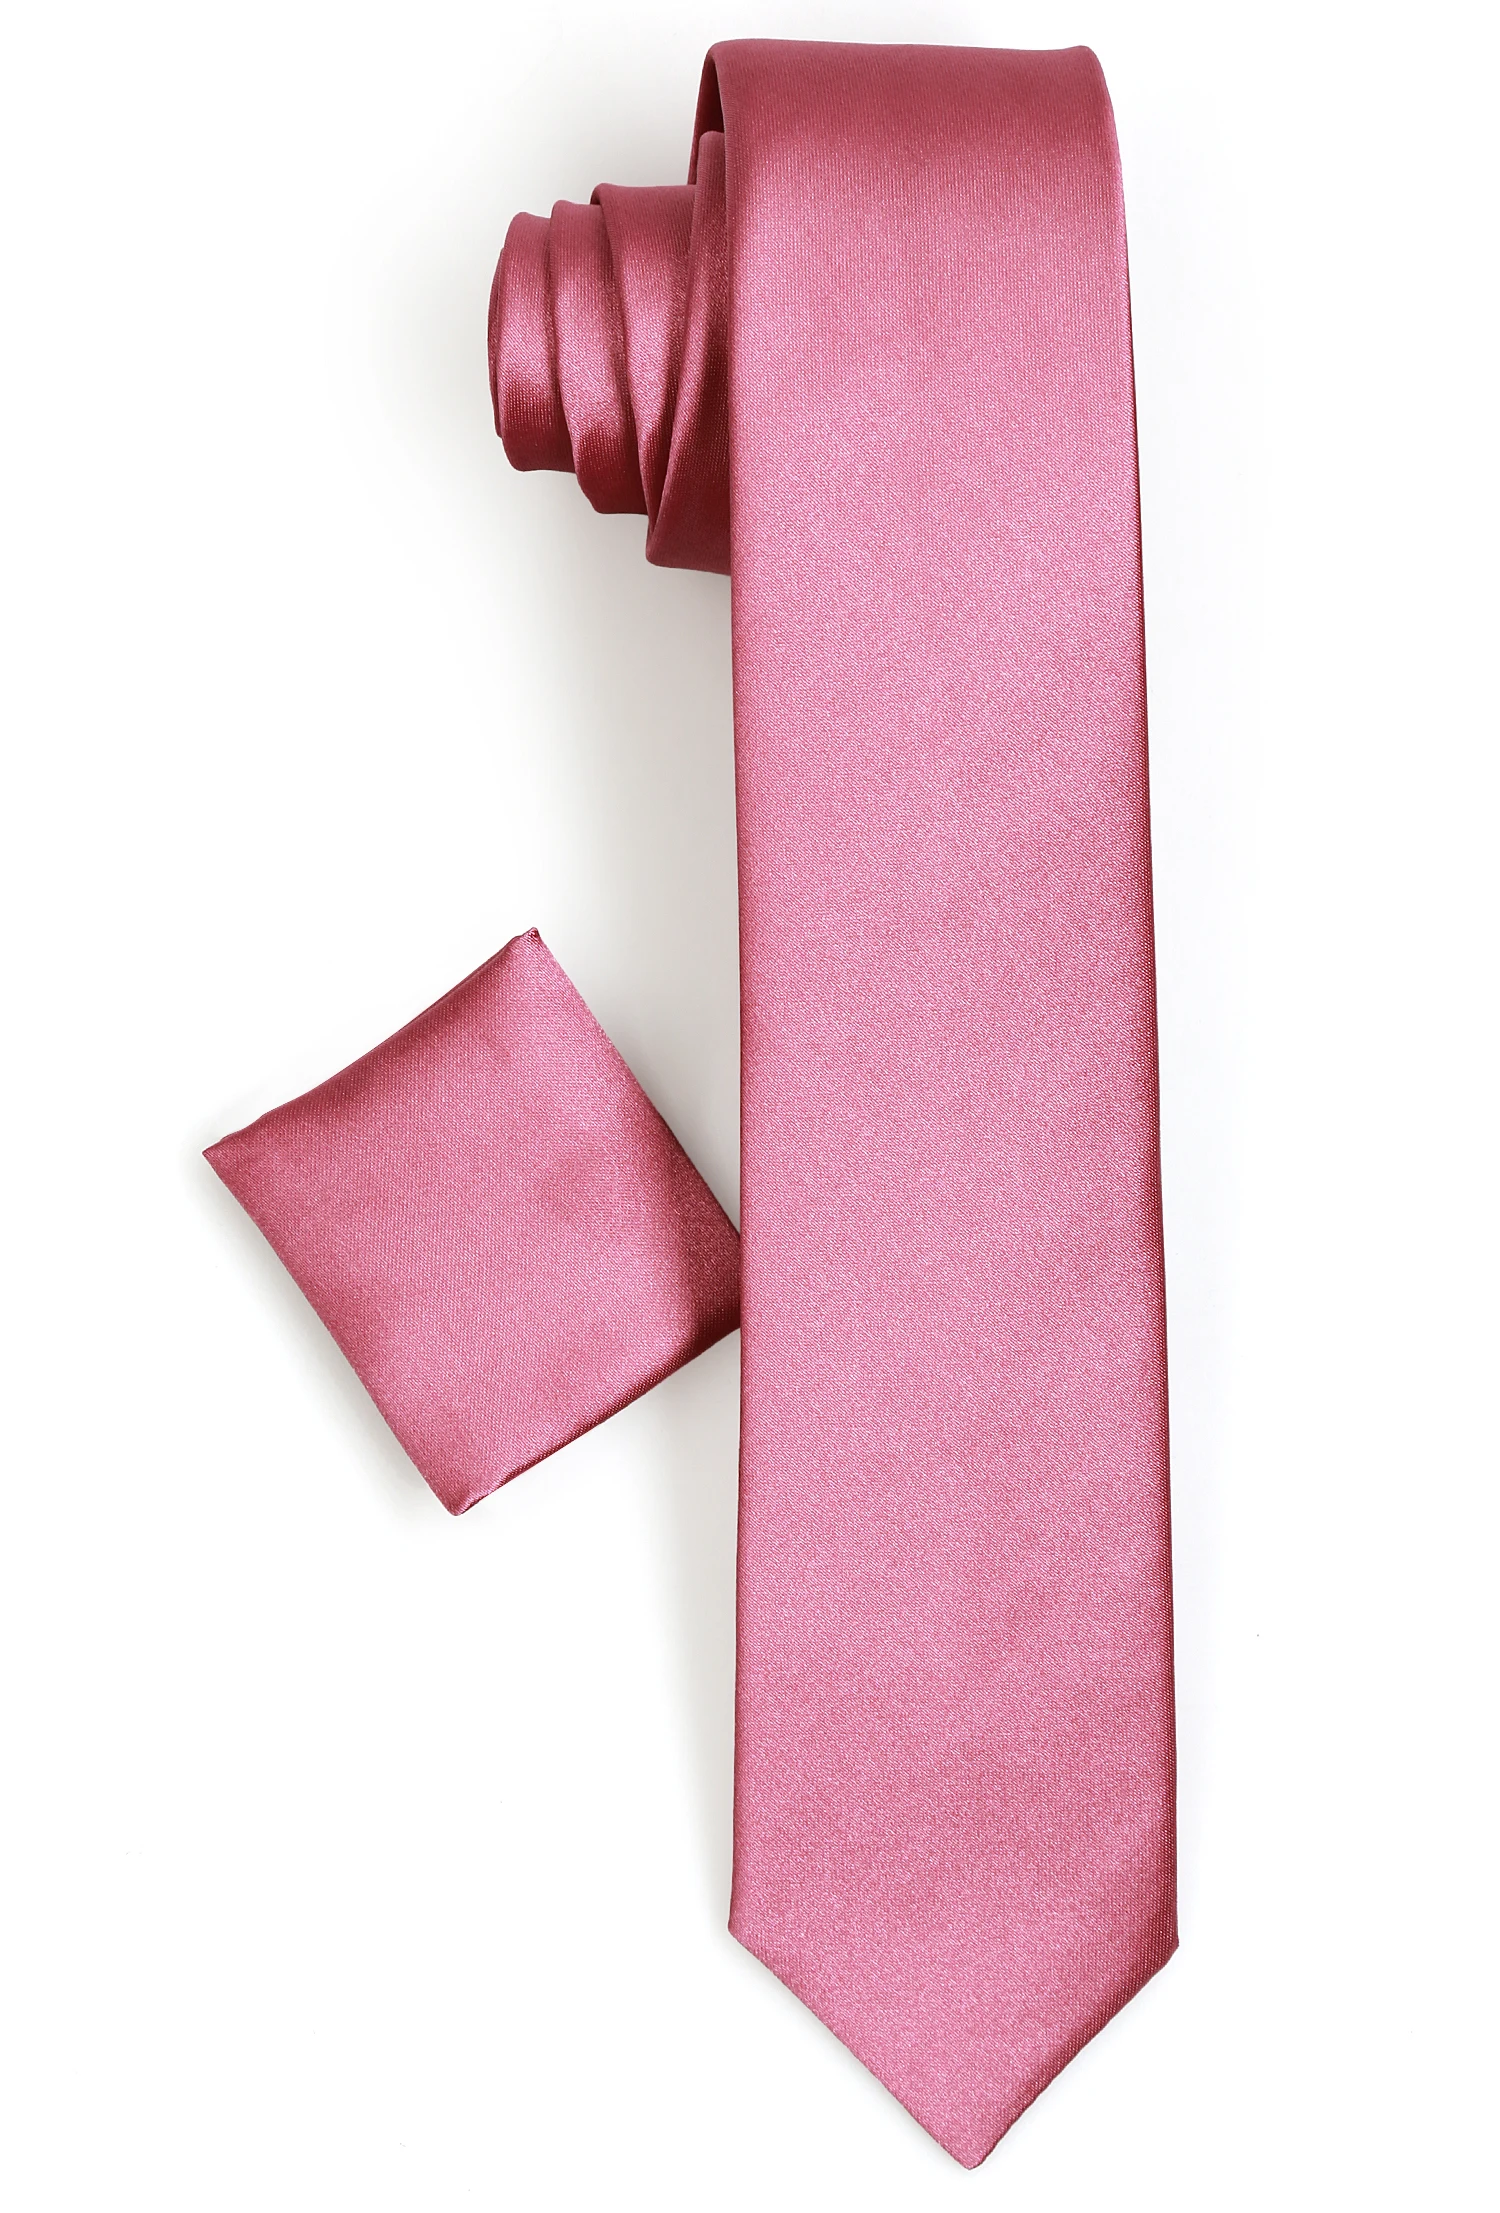 Мужской галстук-бабочка Varetta, однотонные серые галстуки для взрослых, Полиэстеровые Галстуки одного размера, галстук krawatte, Сделано в Турции от AliExpress WW